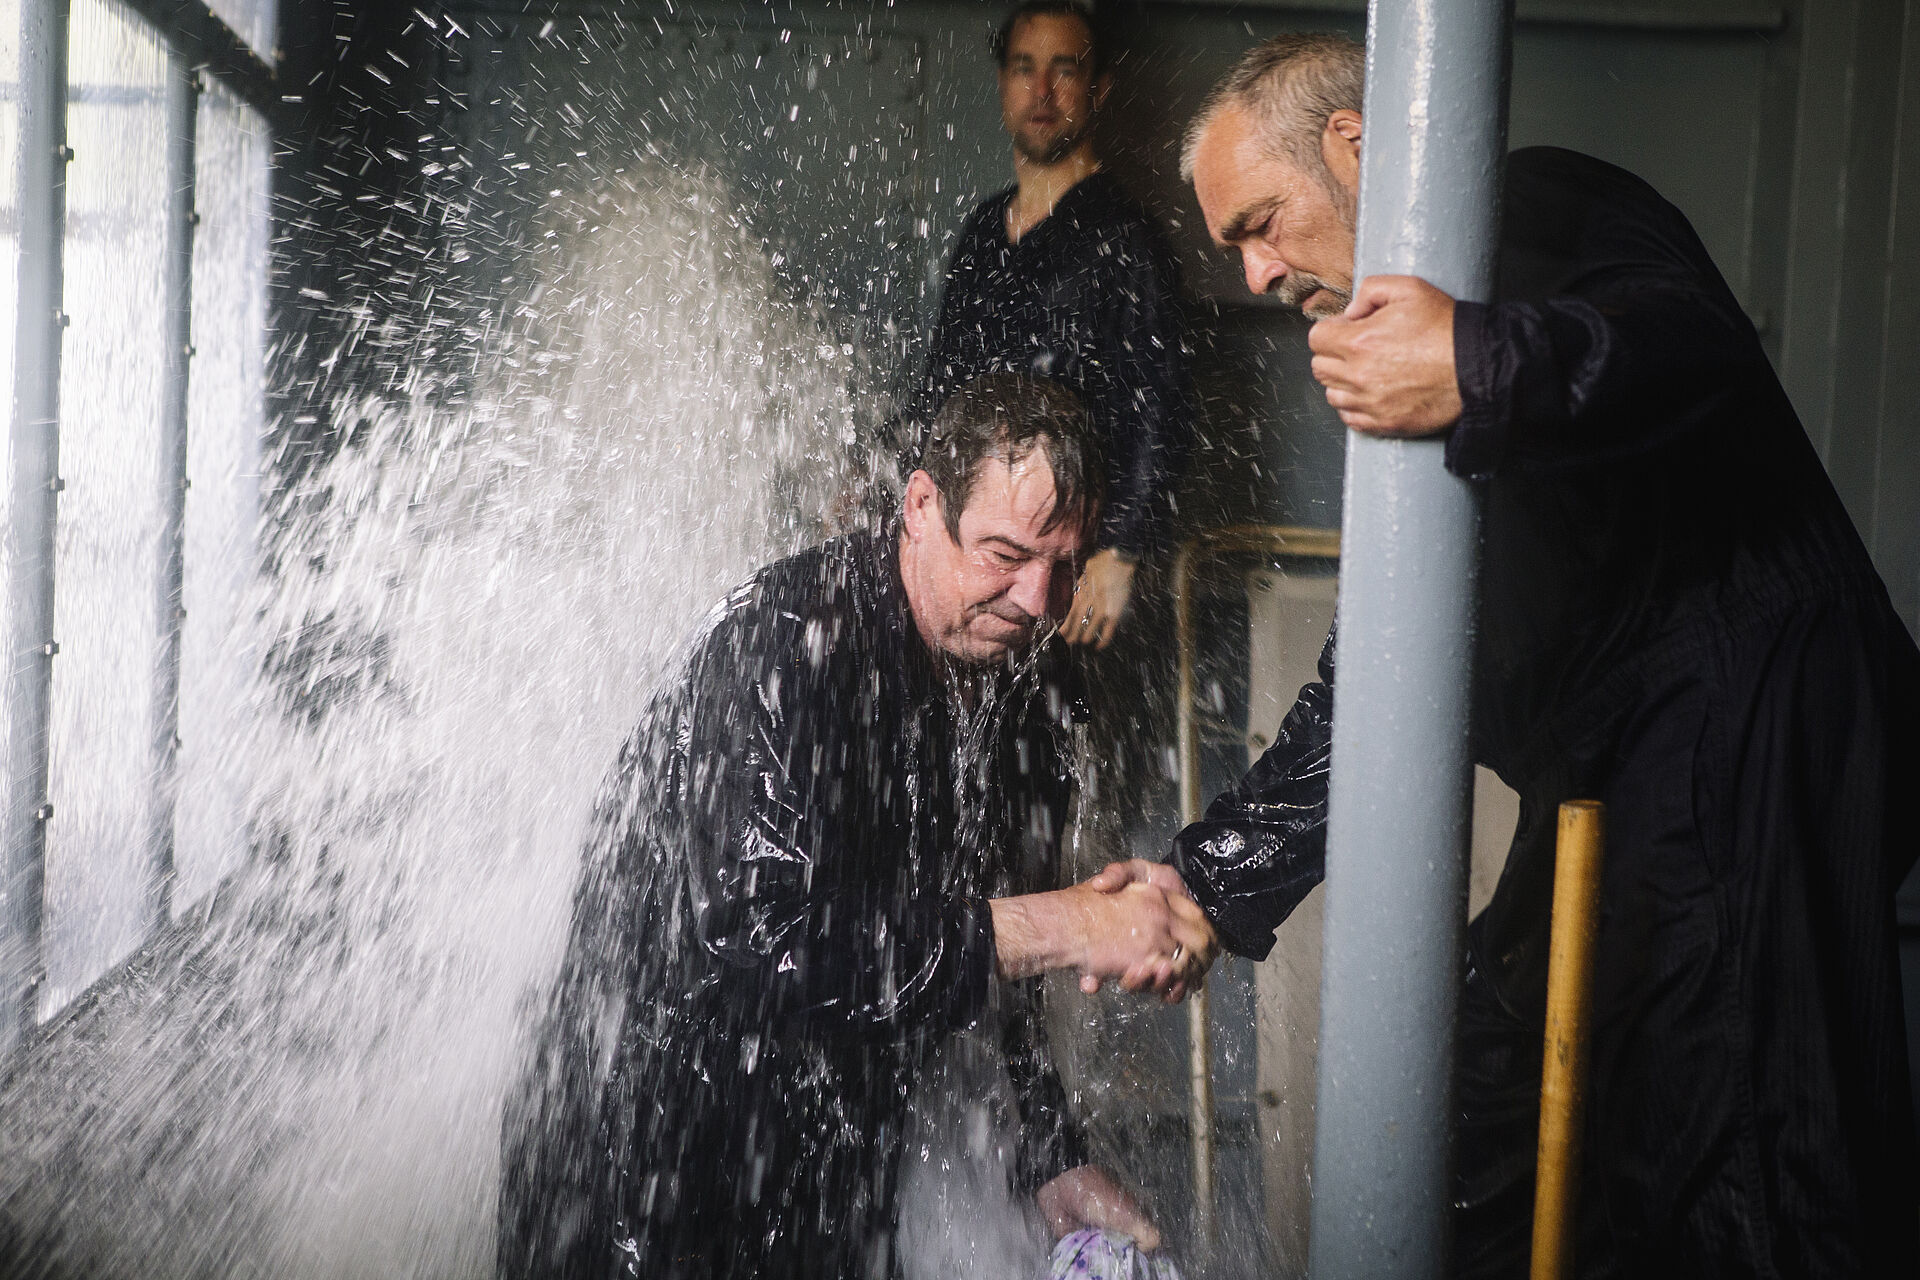 Zwei Männer versuchen ein Leck zu stopfen, aus dem Wasser spritzt.